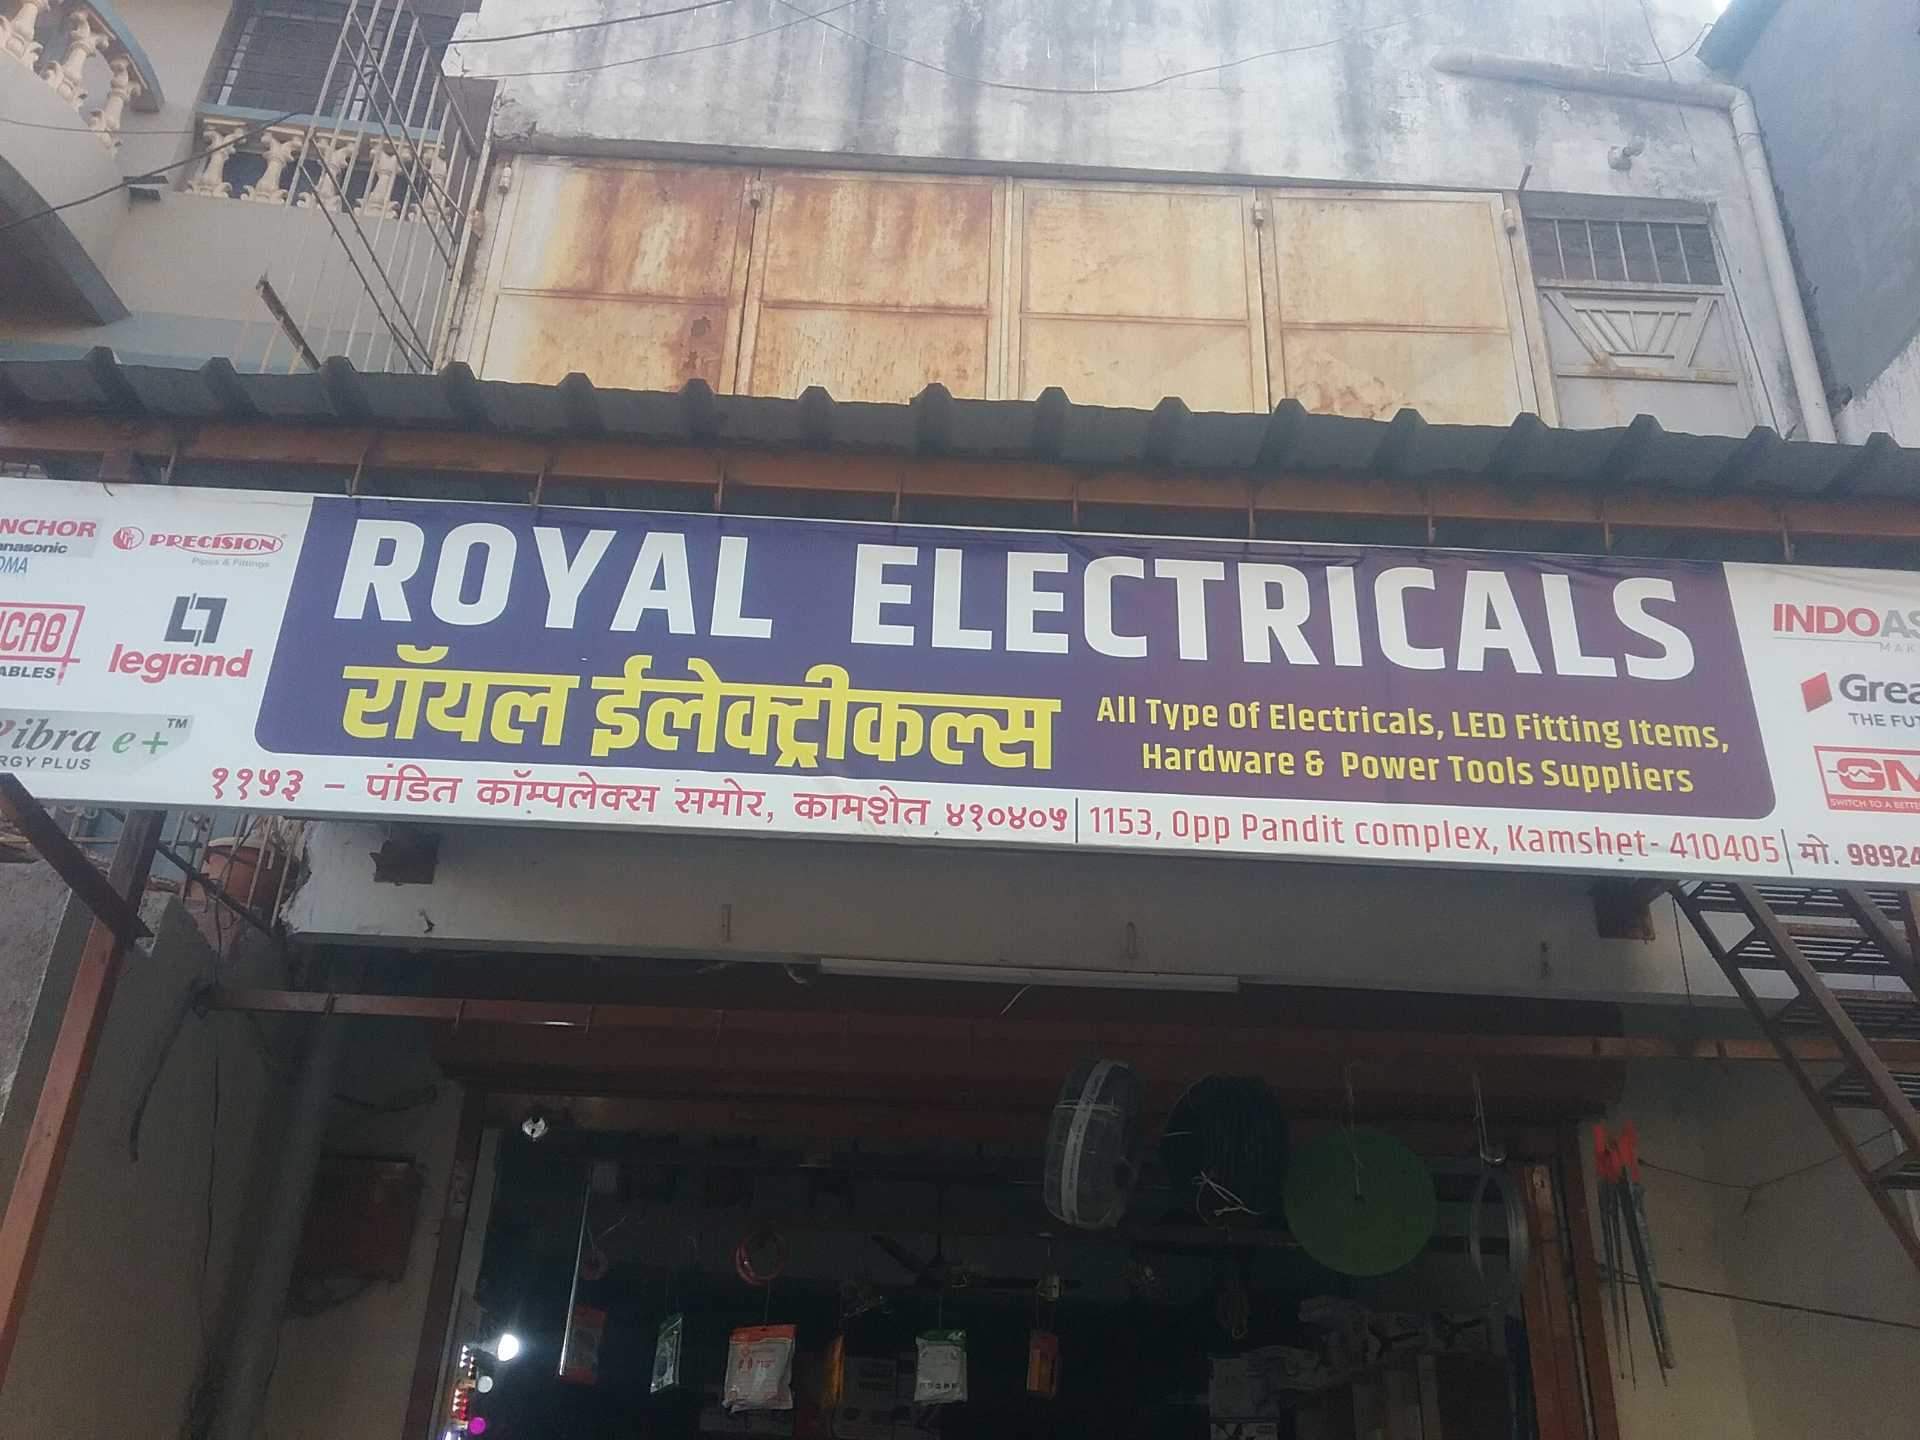 Royal Electrical & Hardware, Kamshet - Commercial Building , HD Wallpaper & Backgrounds